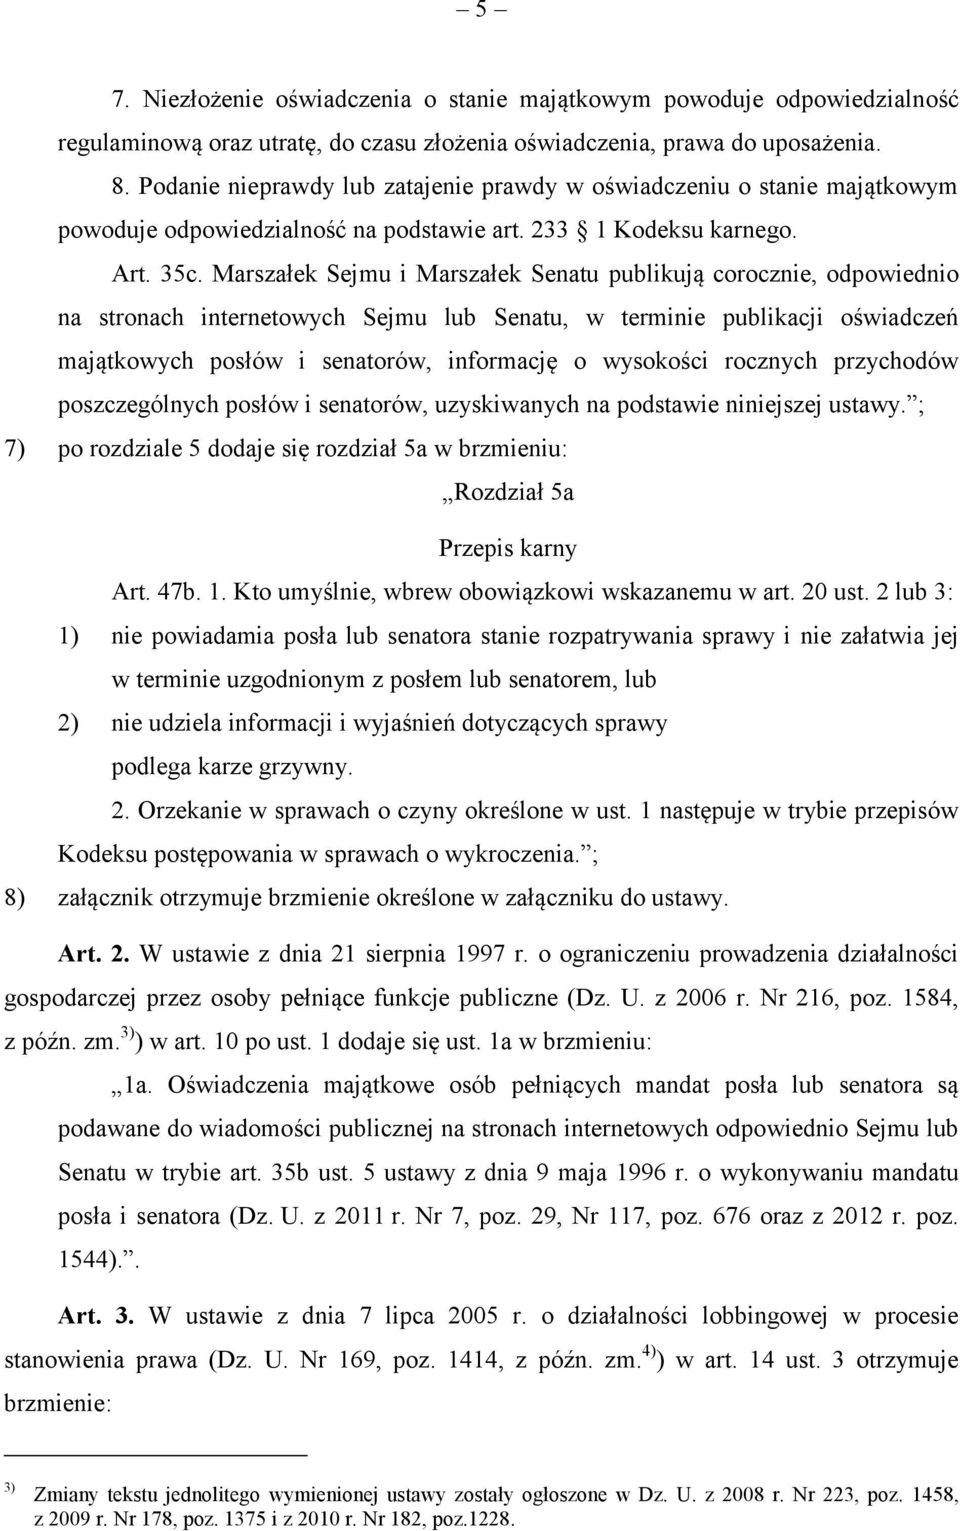 Marszałek Sejmu i Marszałek Senatu publikują corocznie, odpowiednio na stronach internetowych Sejmu lub Senatu, w terminie publikacji oświadczeń majątkowych posłów i senatorów, informację o wysokości